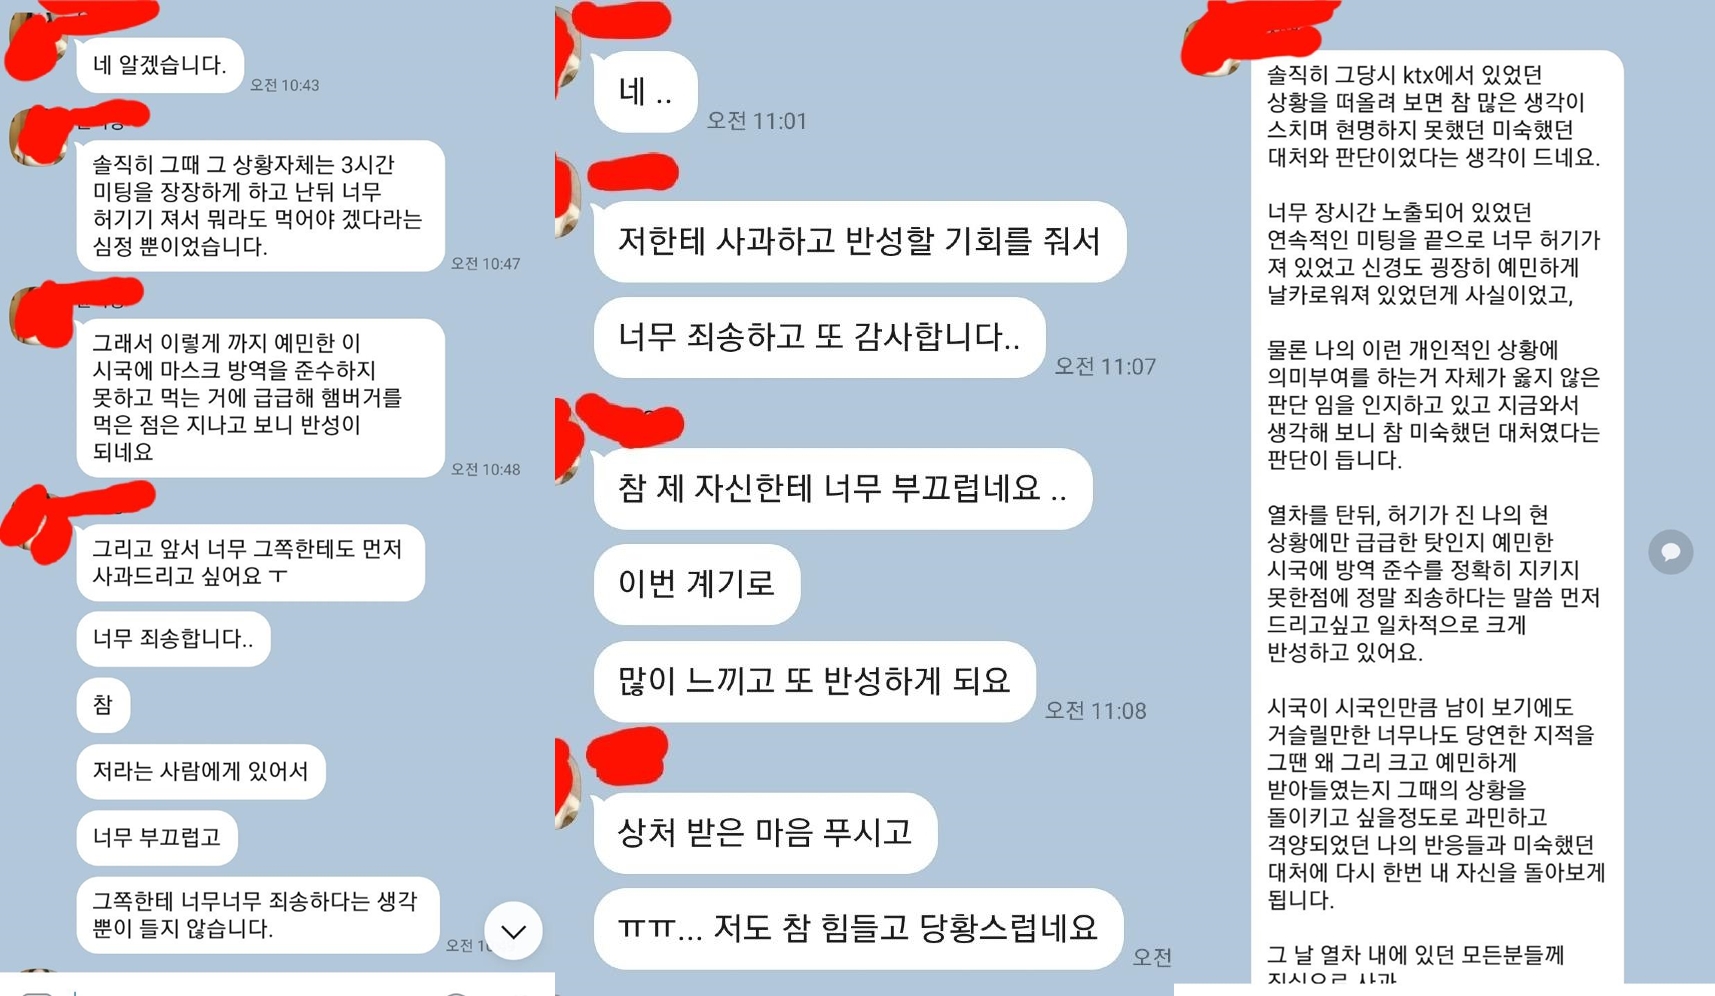 ‘KTX 햄버거 사건’ 승객의 사과 메시지.  보배드림